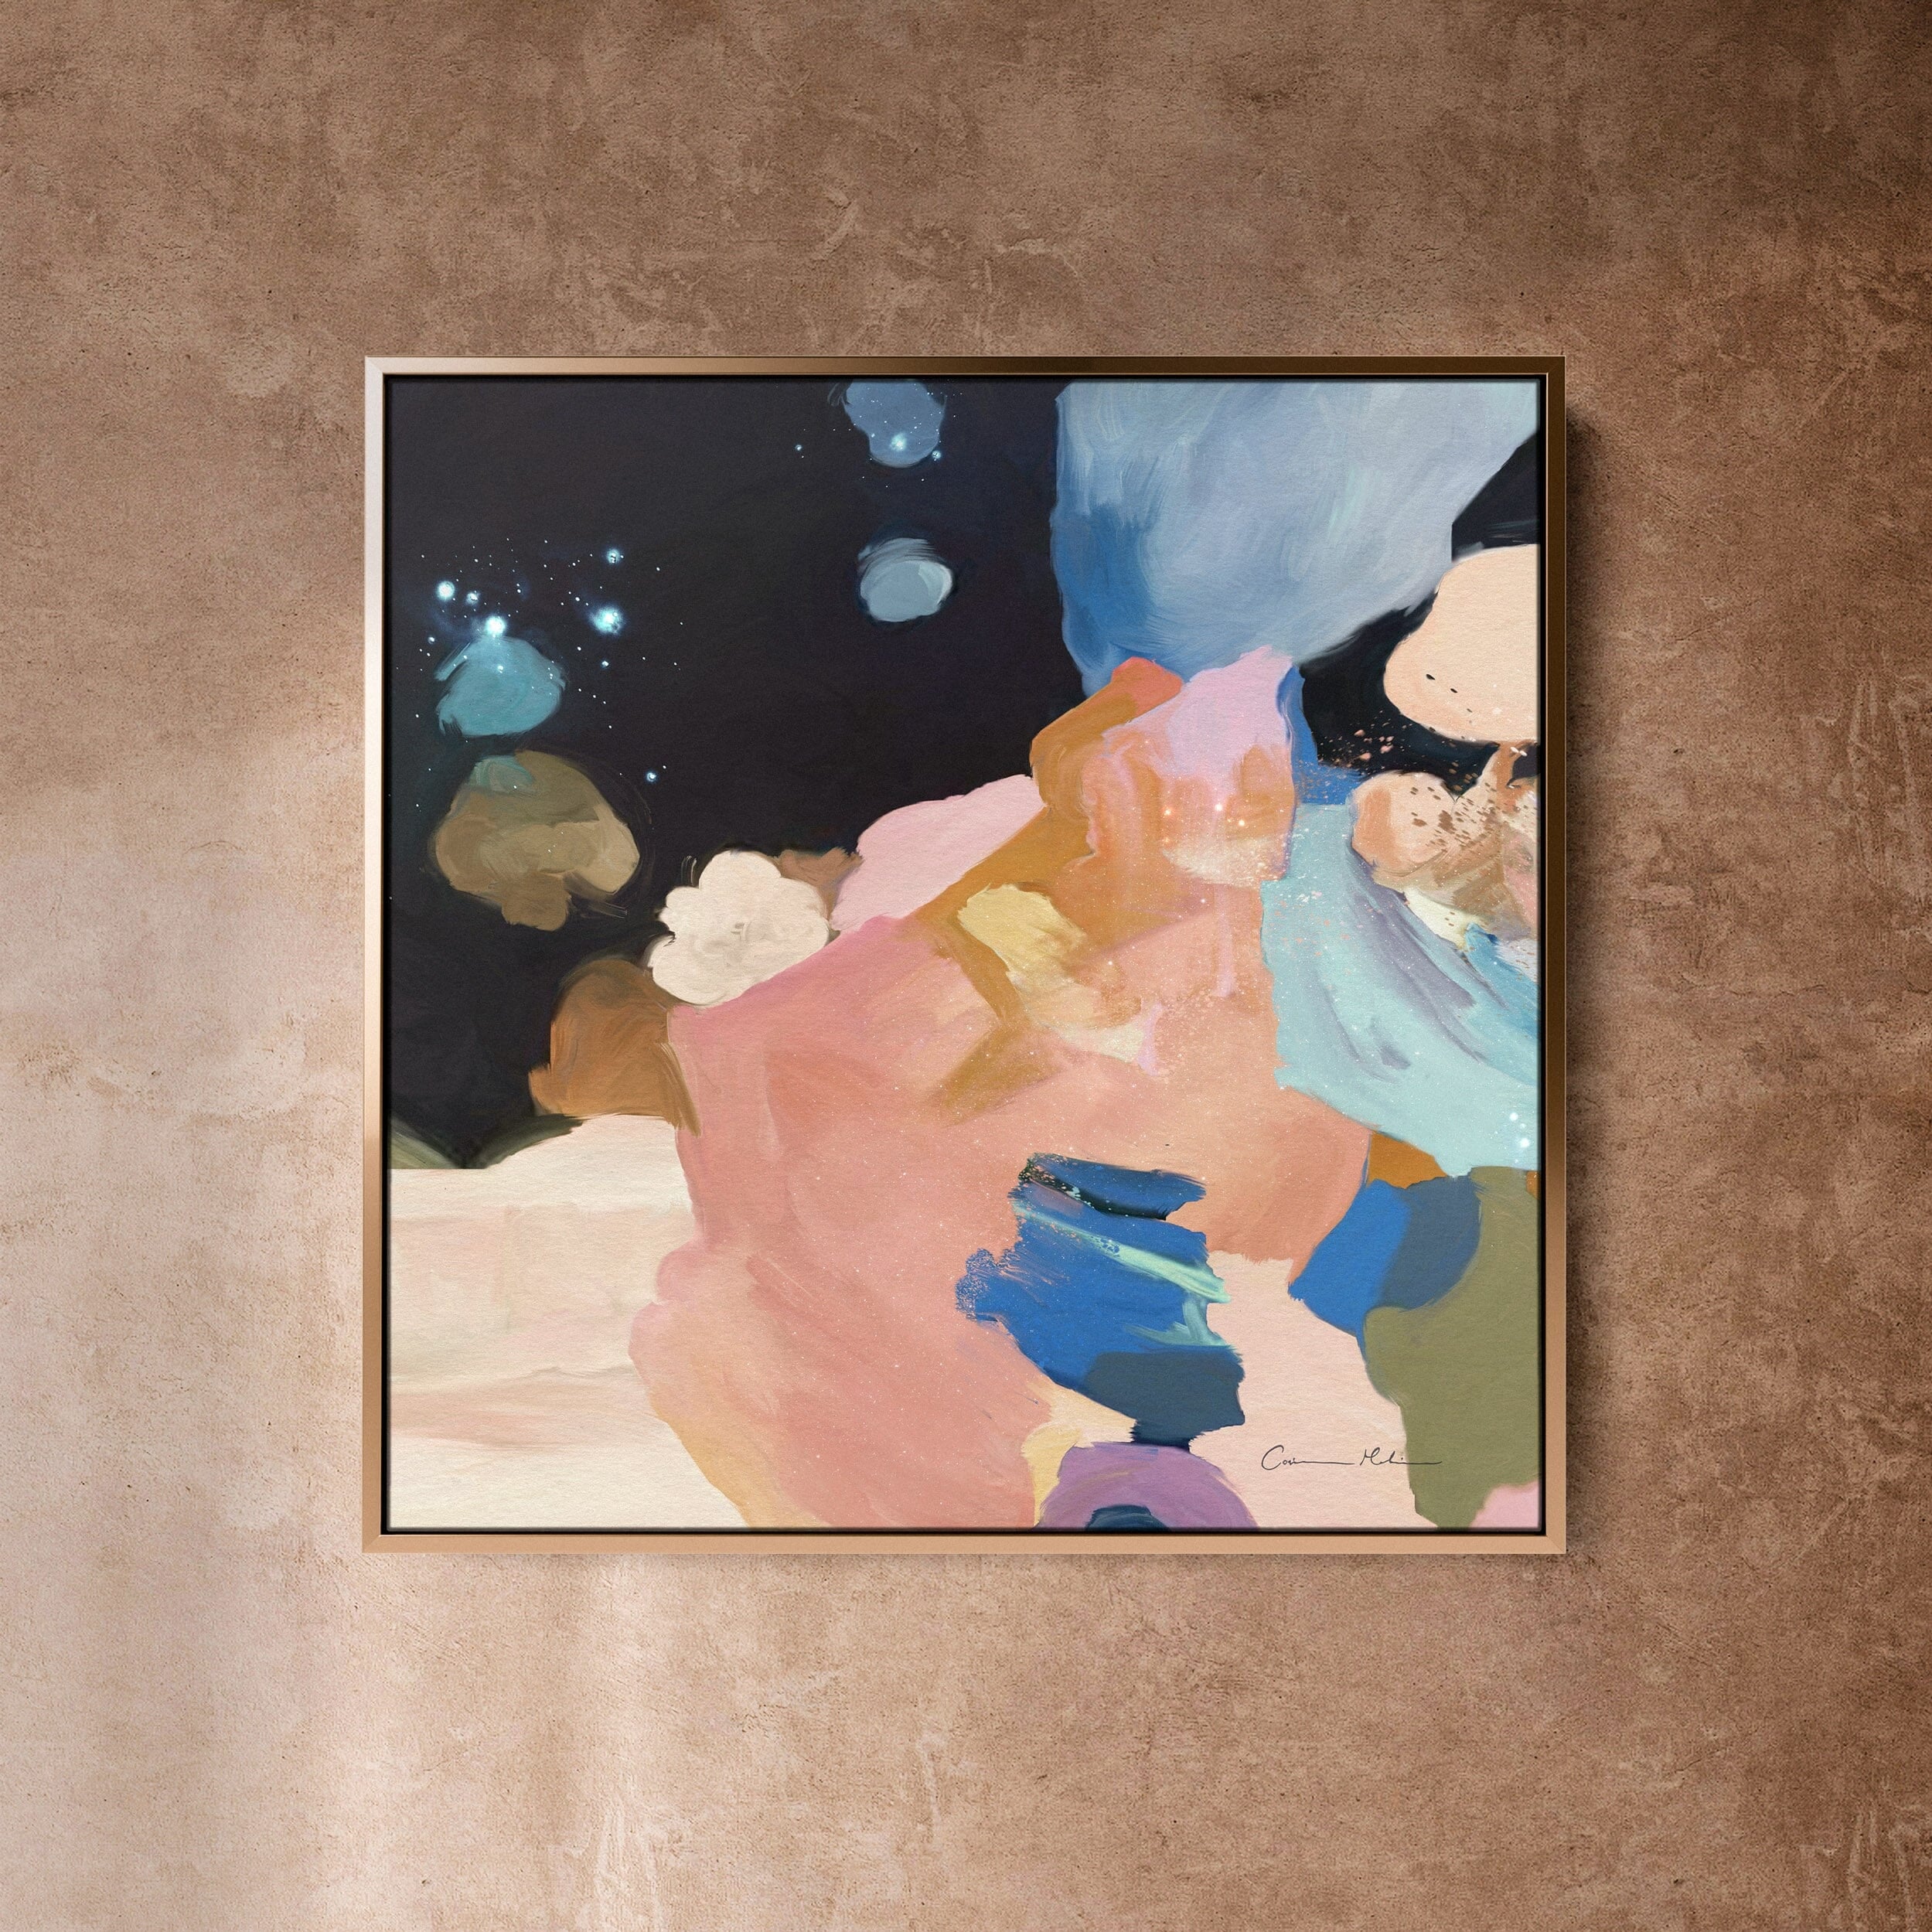 "Clara Auri No. 6" on Canvas Canvas Wall Art Corinne Melanie Professionally Framed - Gold 20x20in / 50x50cm 